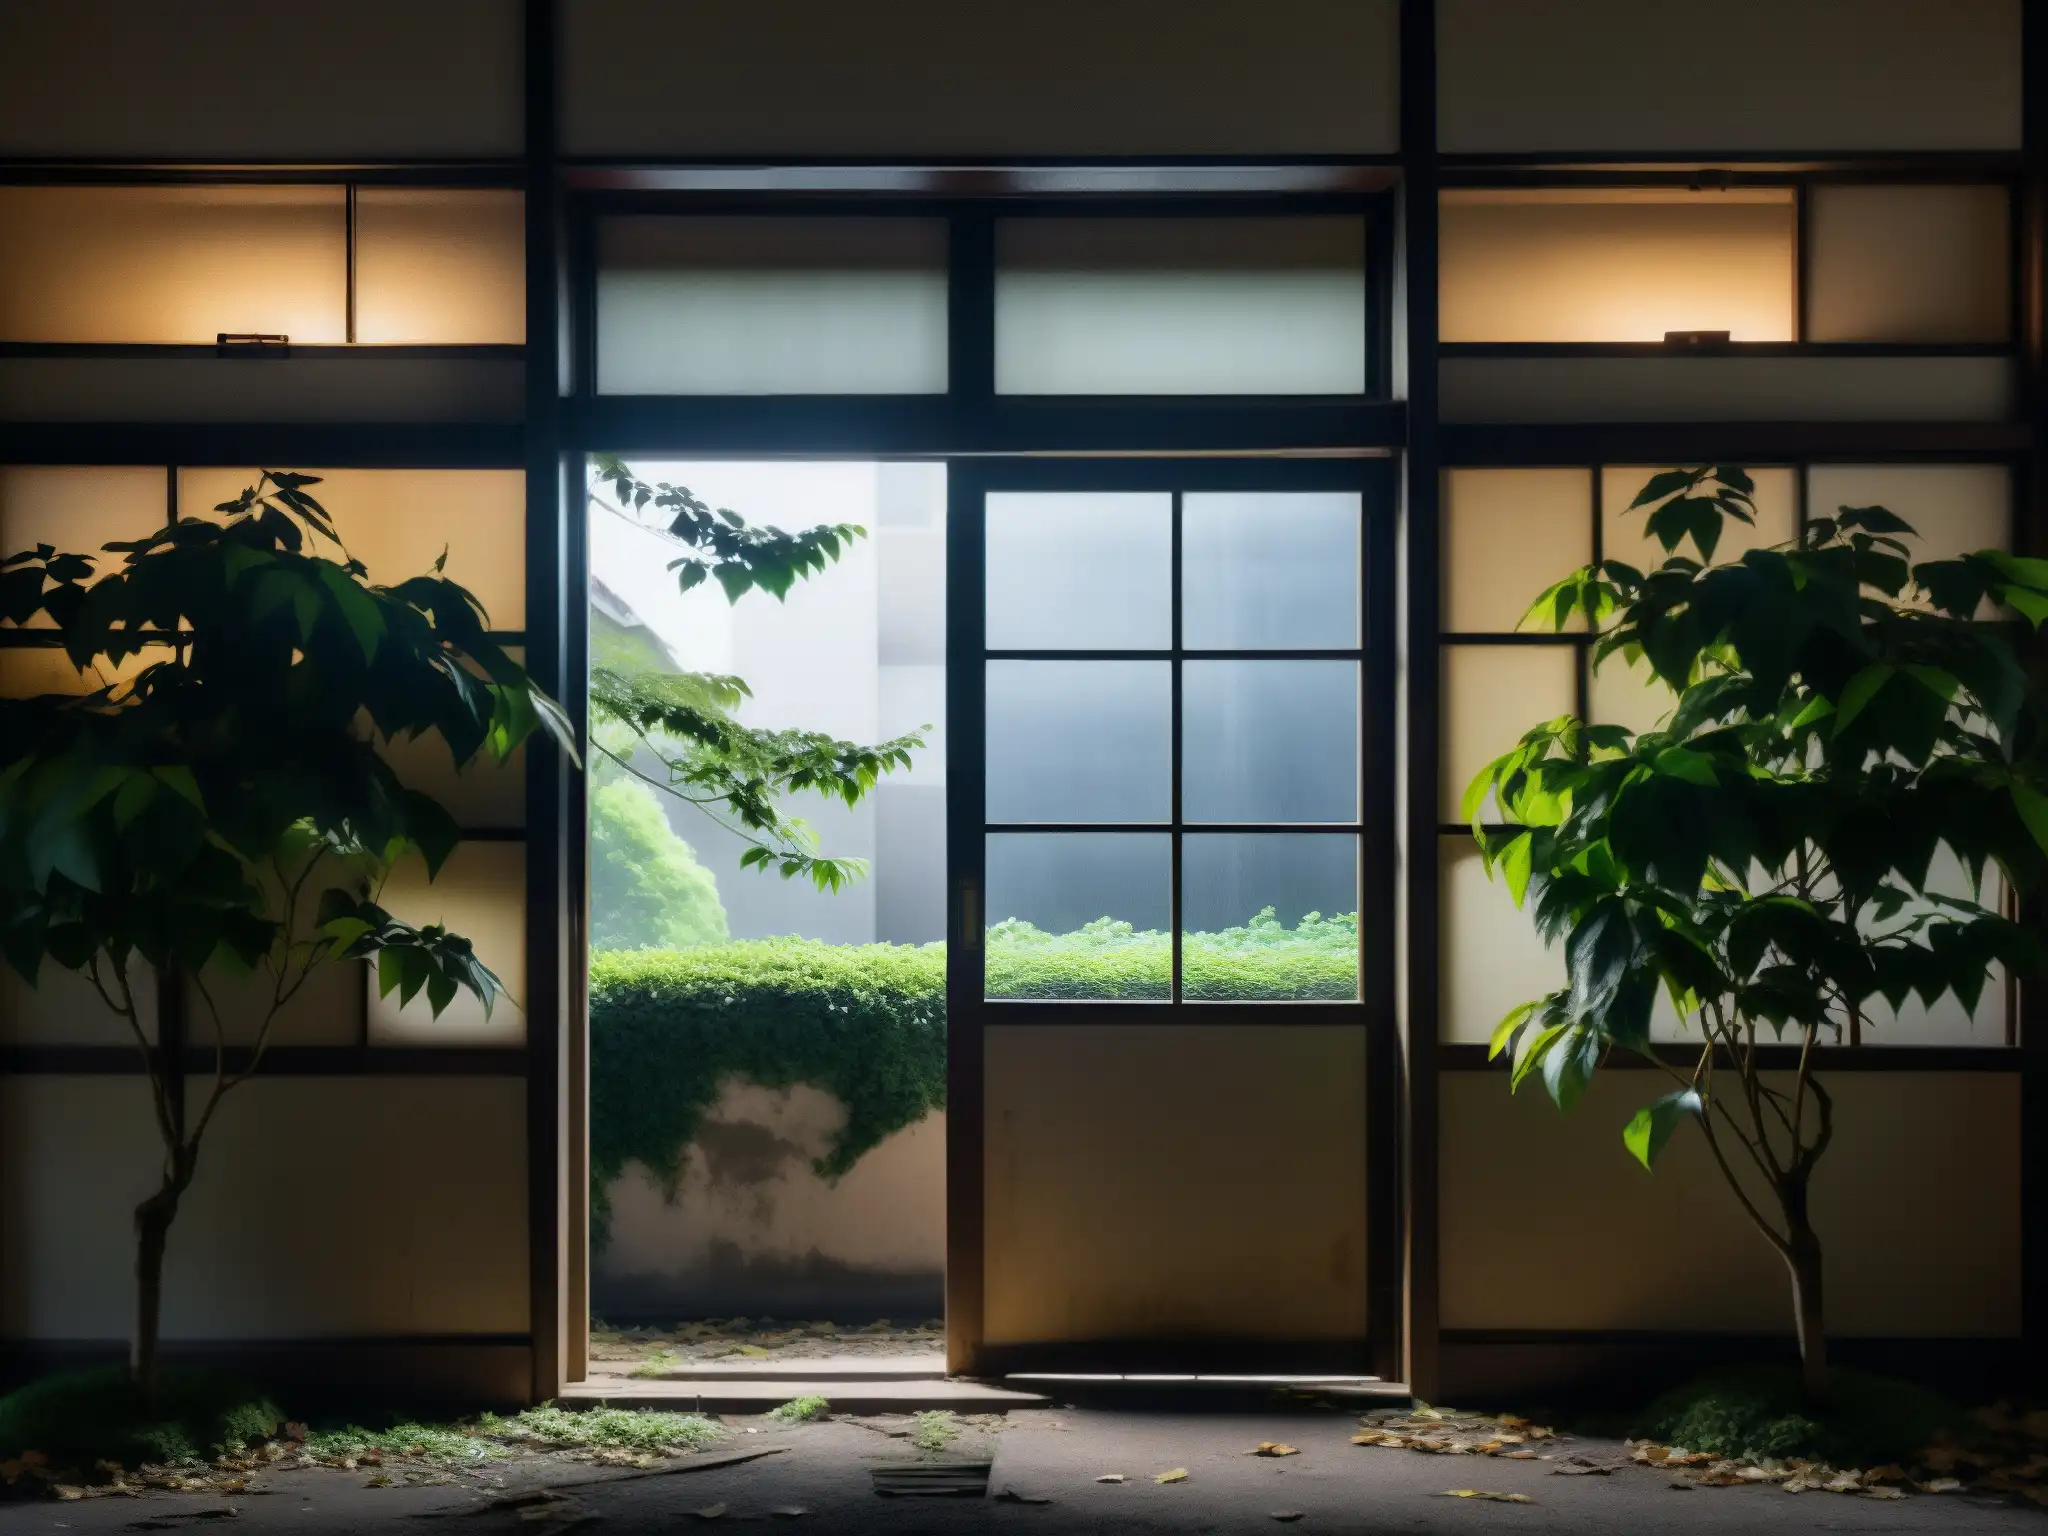 Escuela japonesa abandonada con ambiente espeluznante, papel tattered y silueta misteriosa, ideal para leyendas urbanas japonesas videojuegos